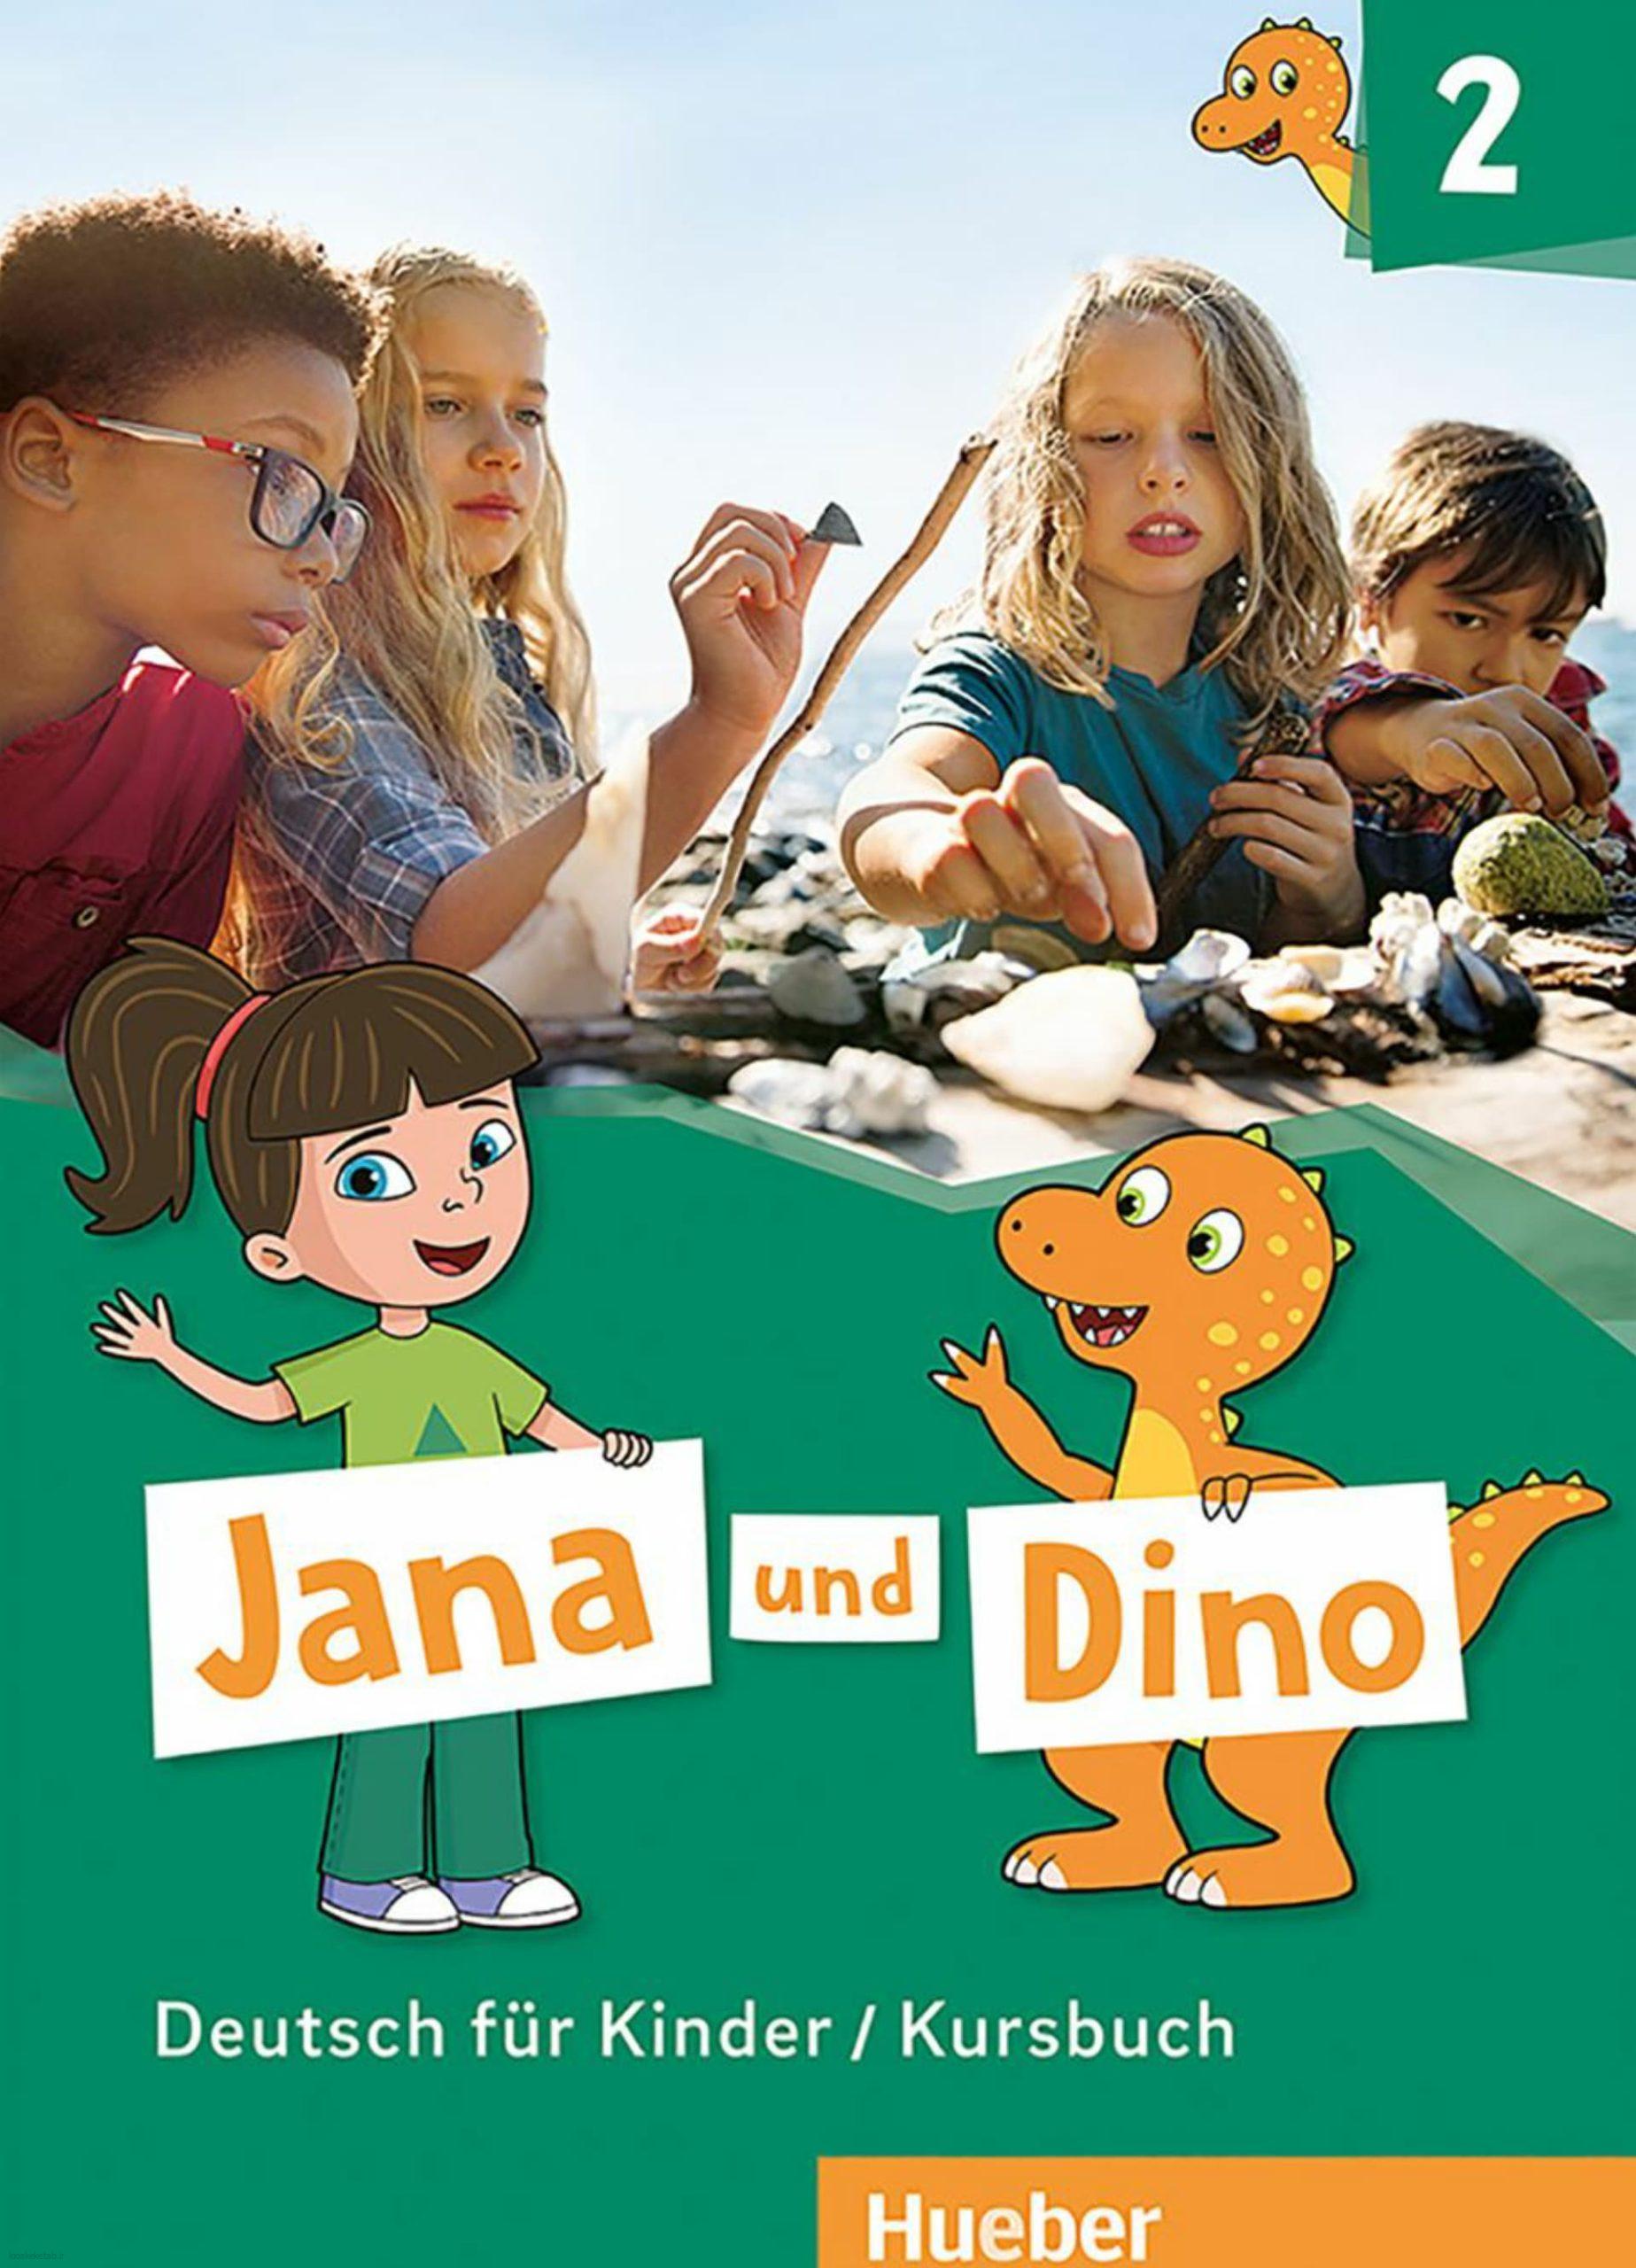 دانلود کتاب آلمانیjana und dino 2